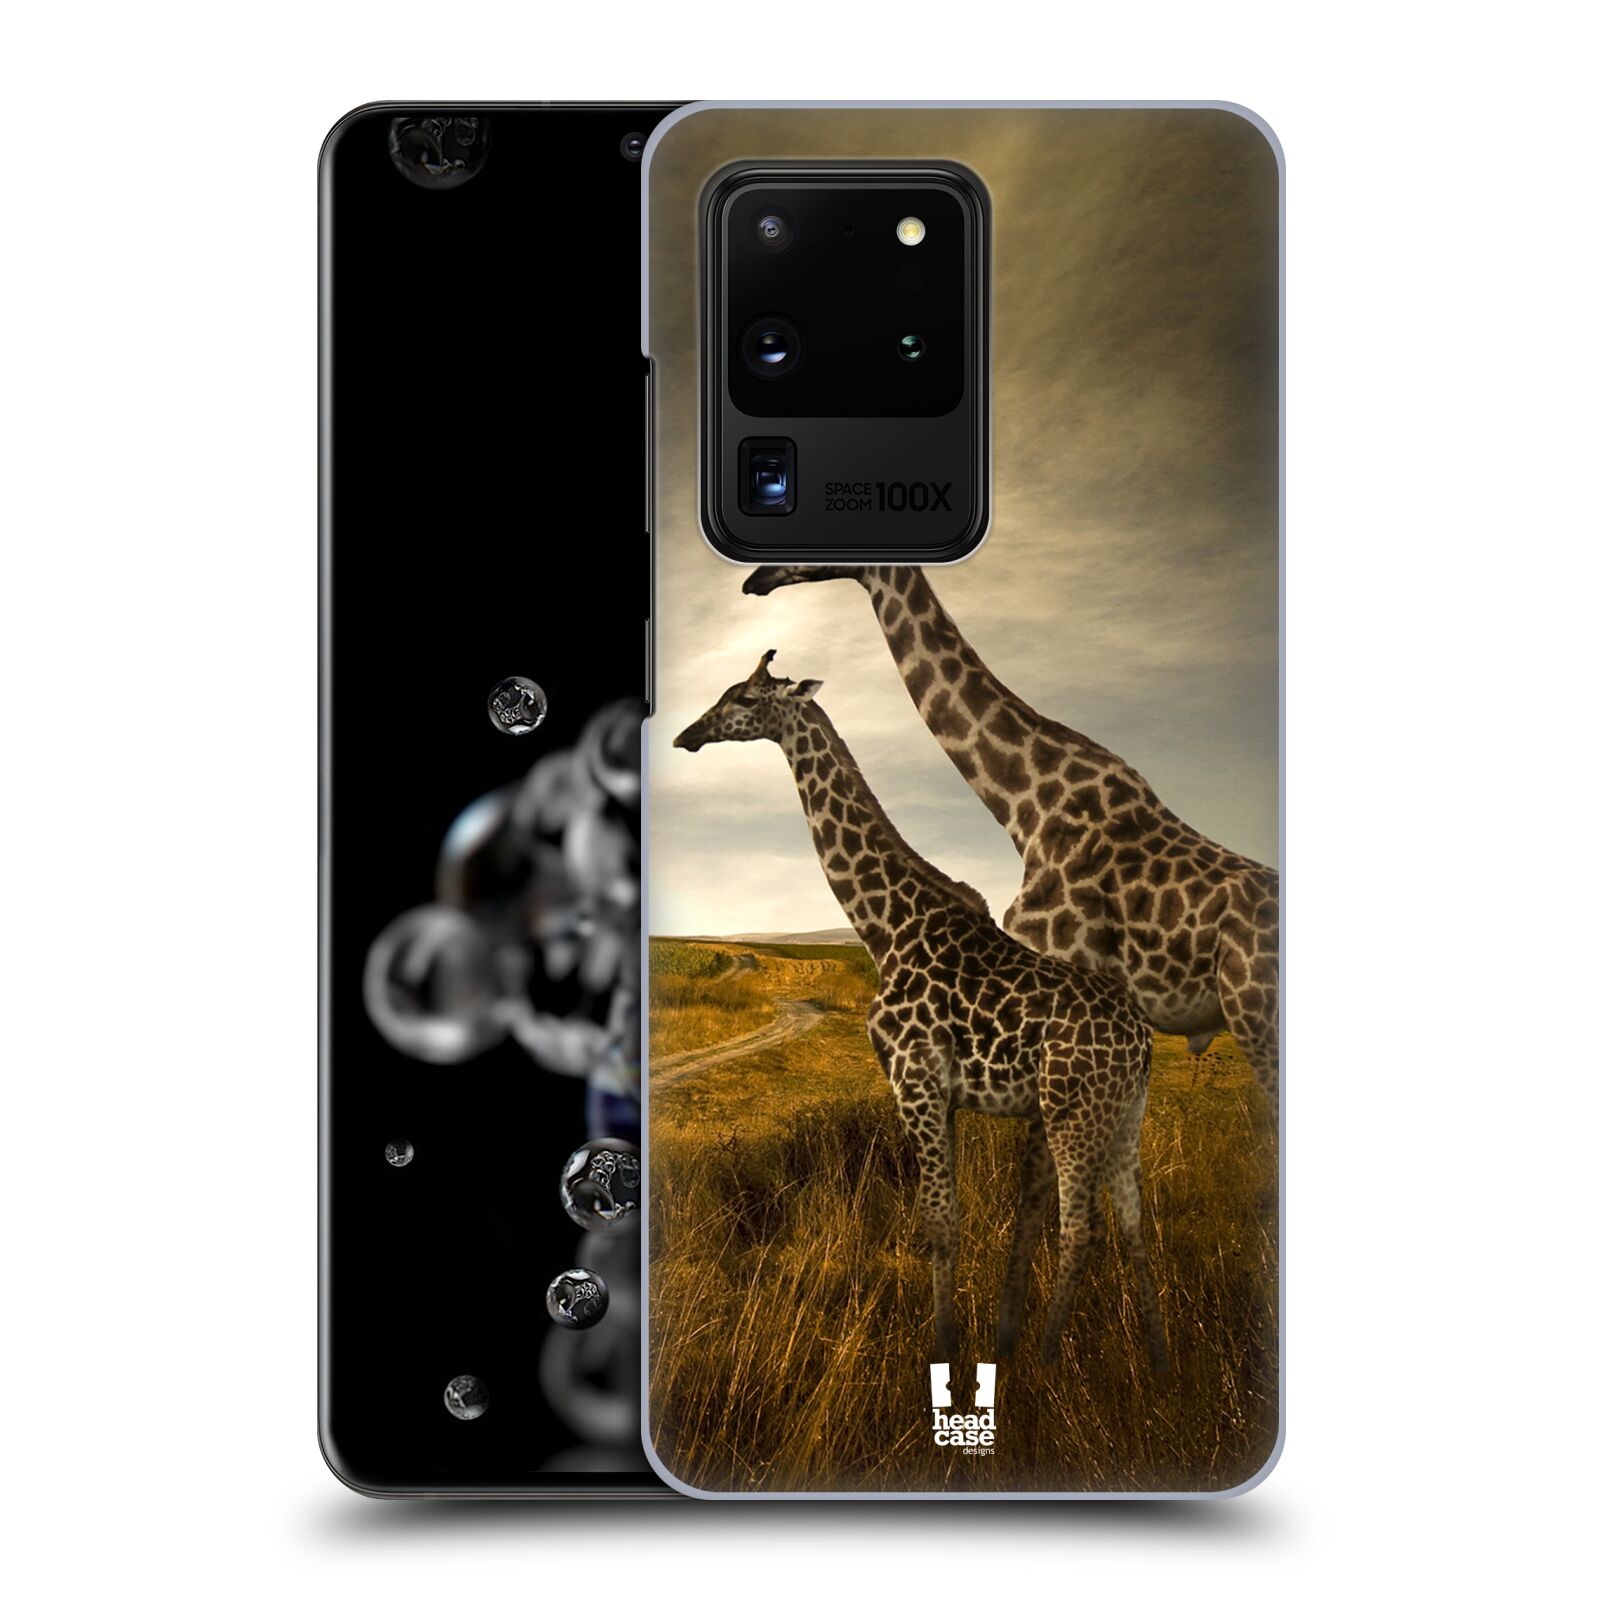 Zadní obal pro mobil Samsung Galaxy S20 ULTRA - HEAD CASE - Svět zvířat žirafy